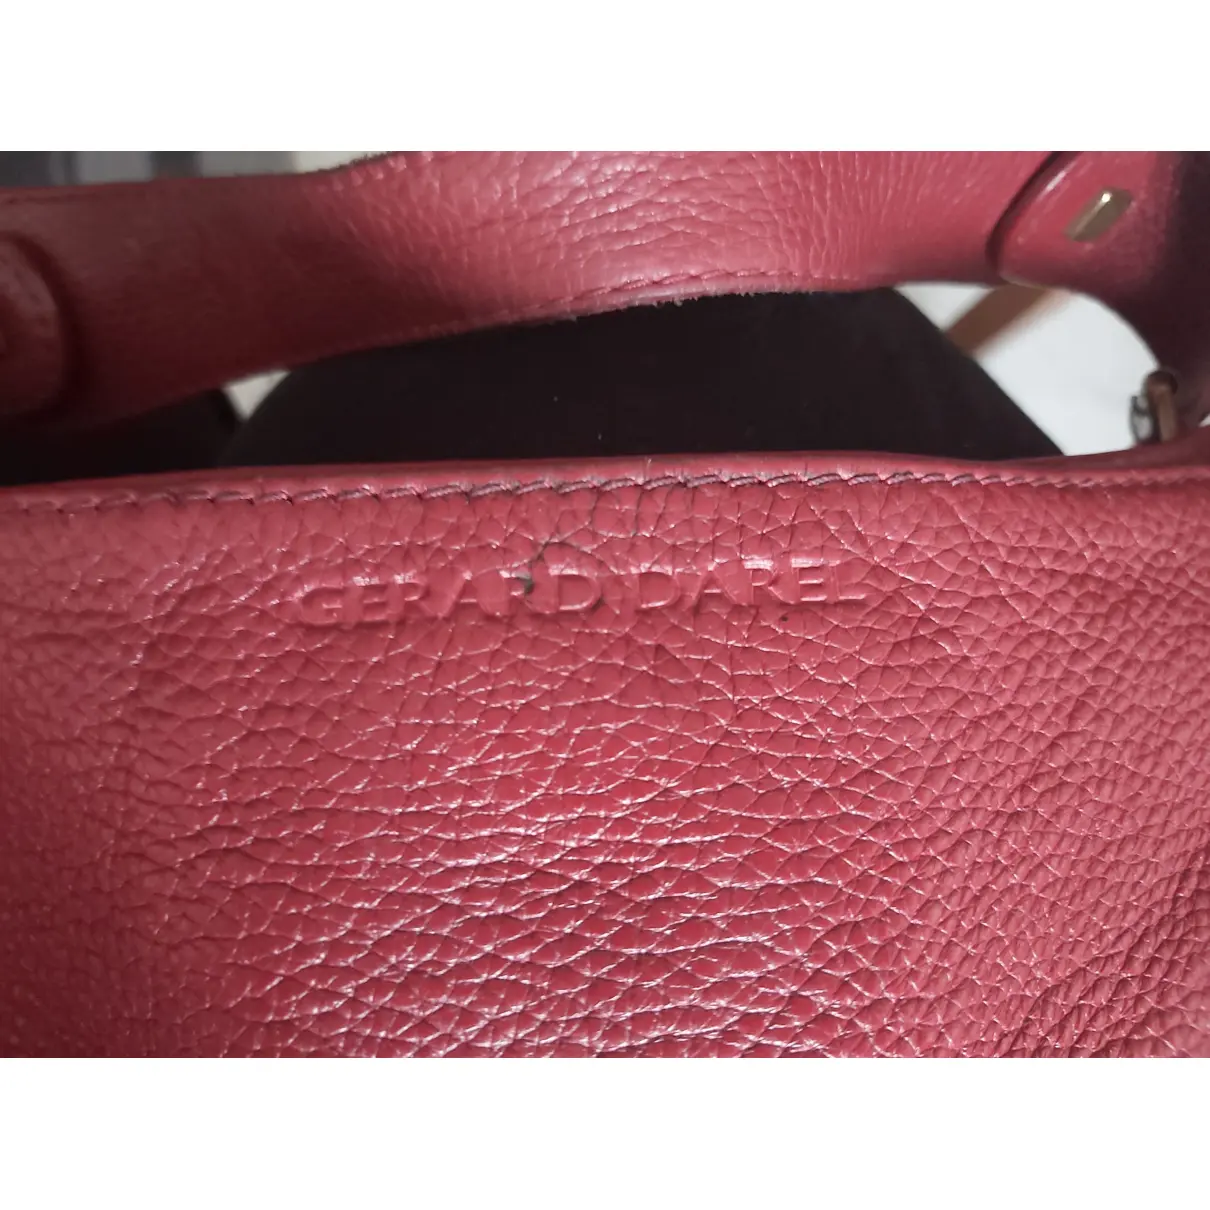 Buy Gerard Darel 24h leather handbag online